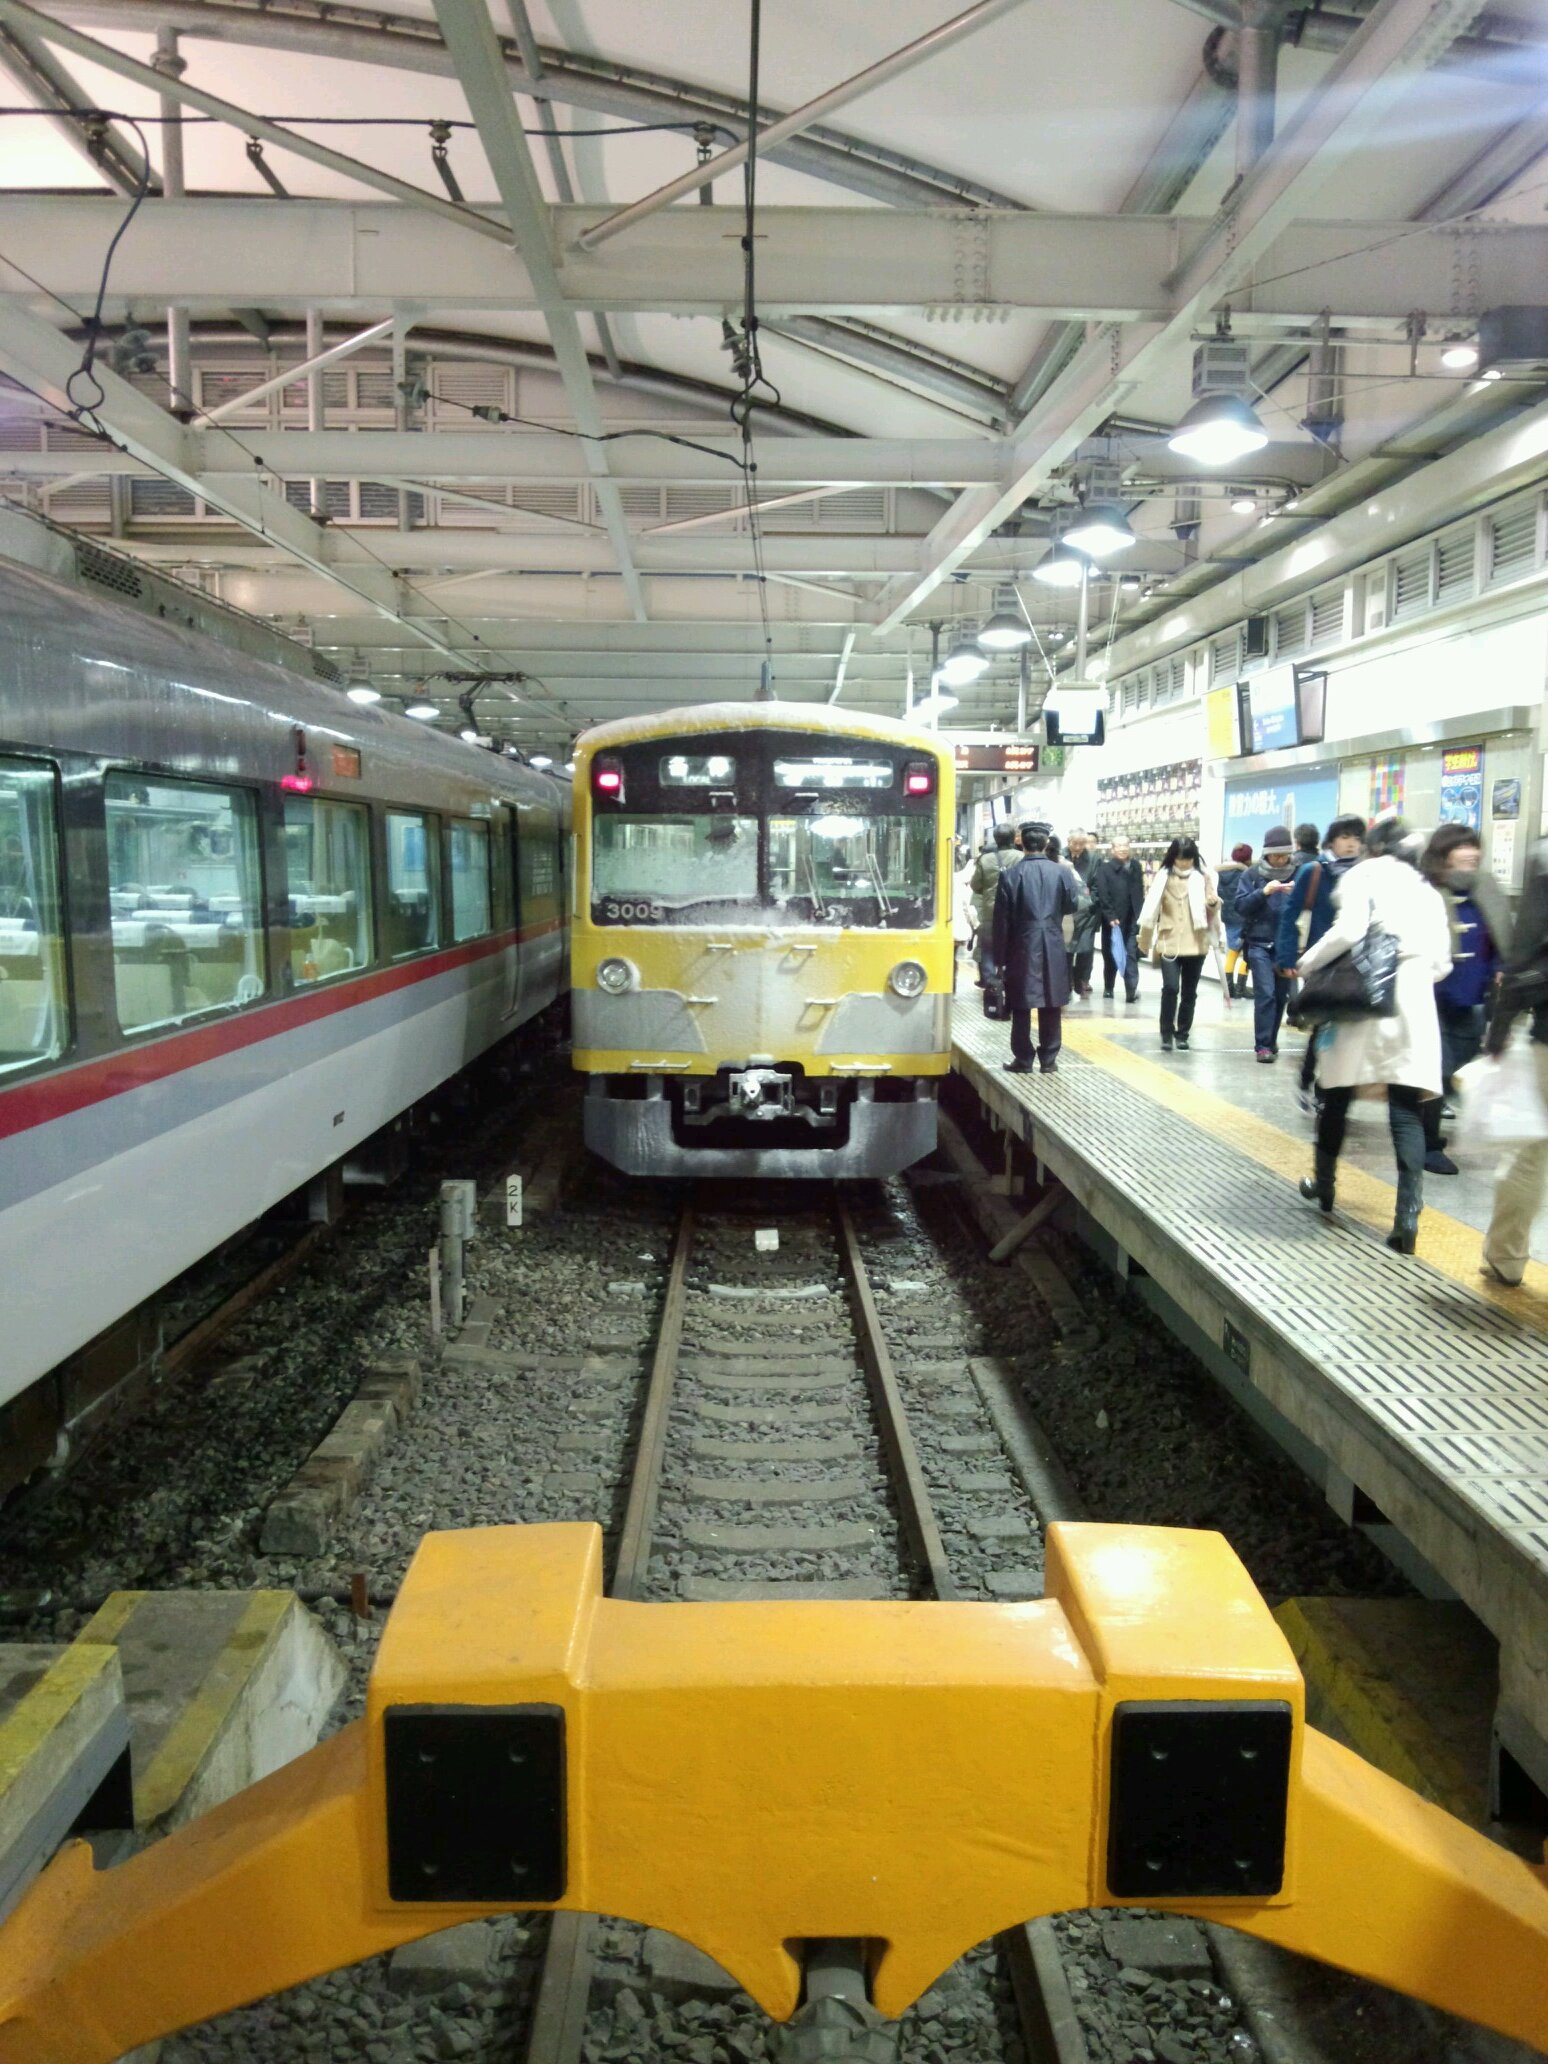 毎日、目にする、西武新宿線にこだわってつぶやいてみたいと思います